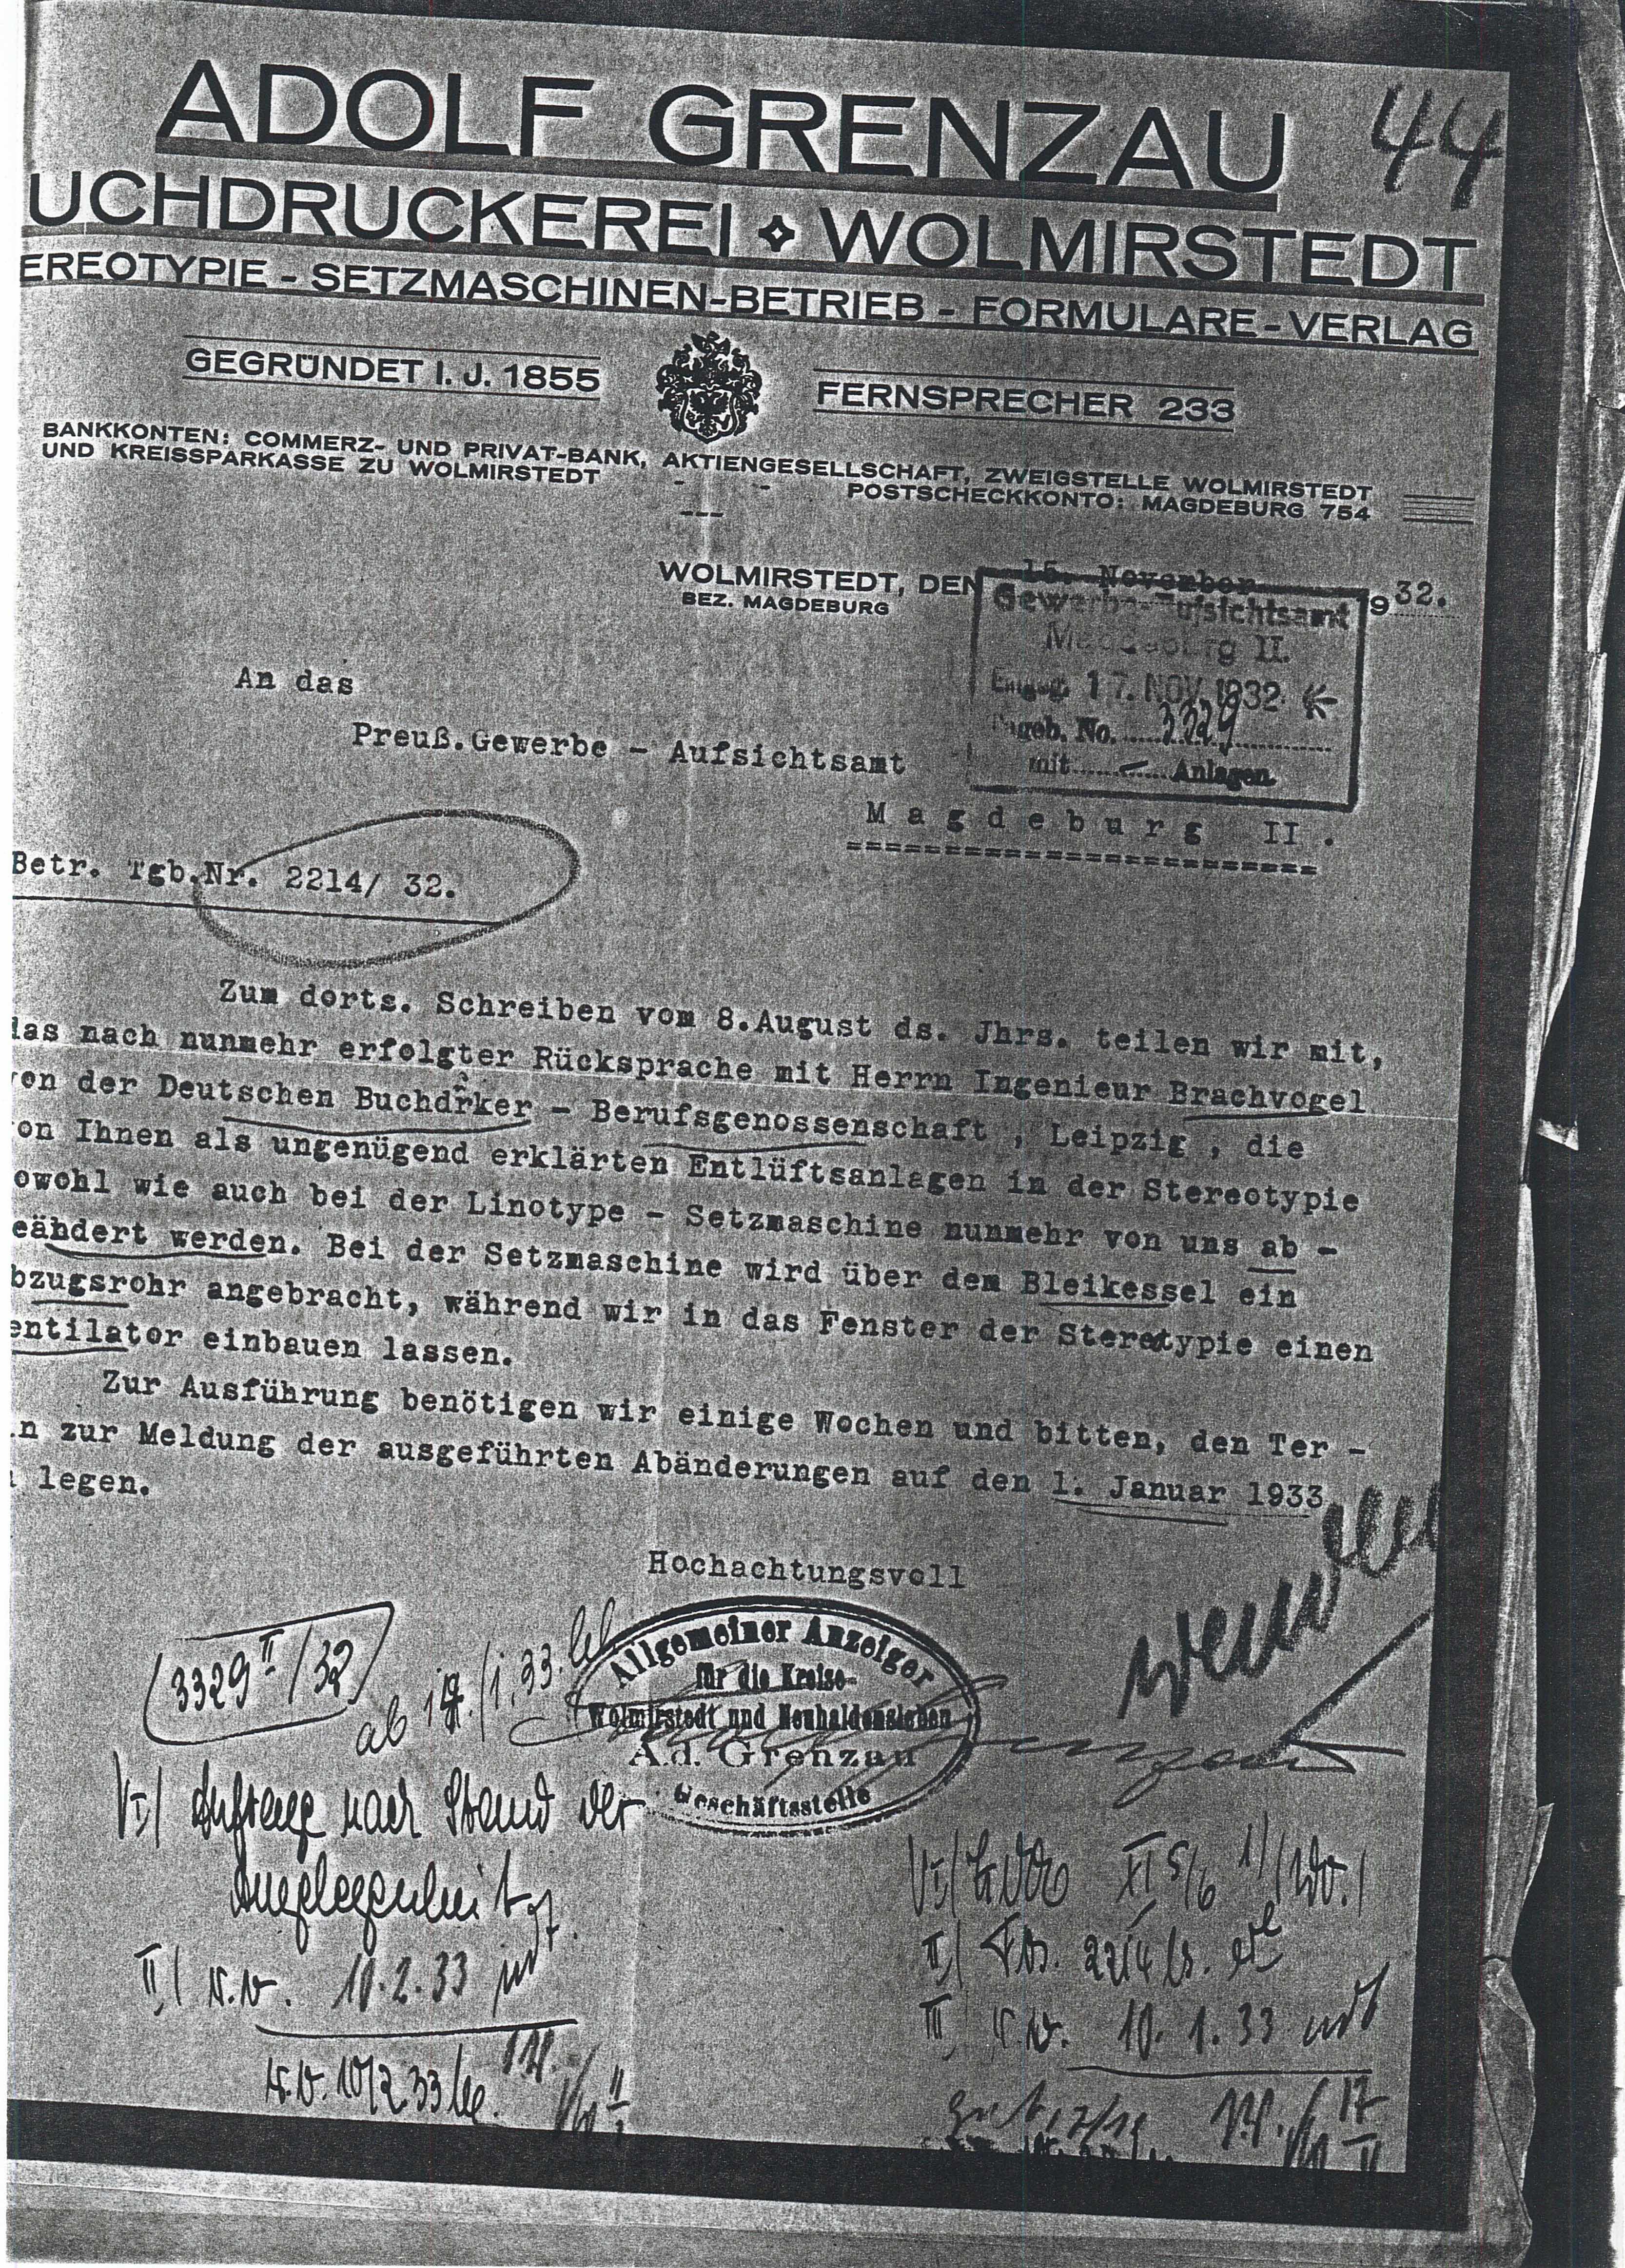 Schreiben Druckerei Grenzau - Umsetzung v. Maschinen - 17.11.1932 (Museum Wolmirstedt RR-F)